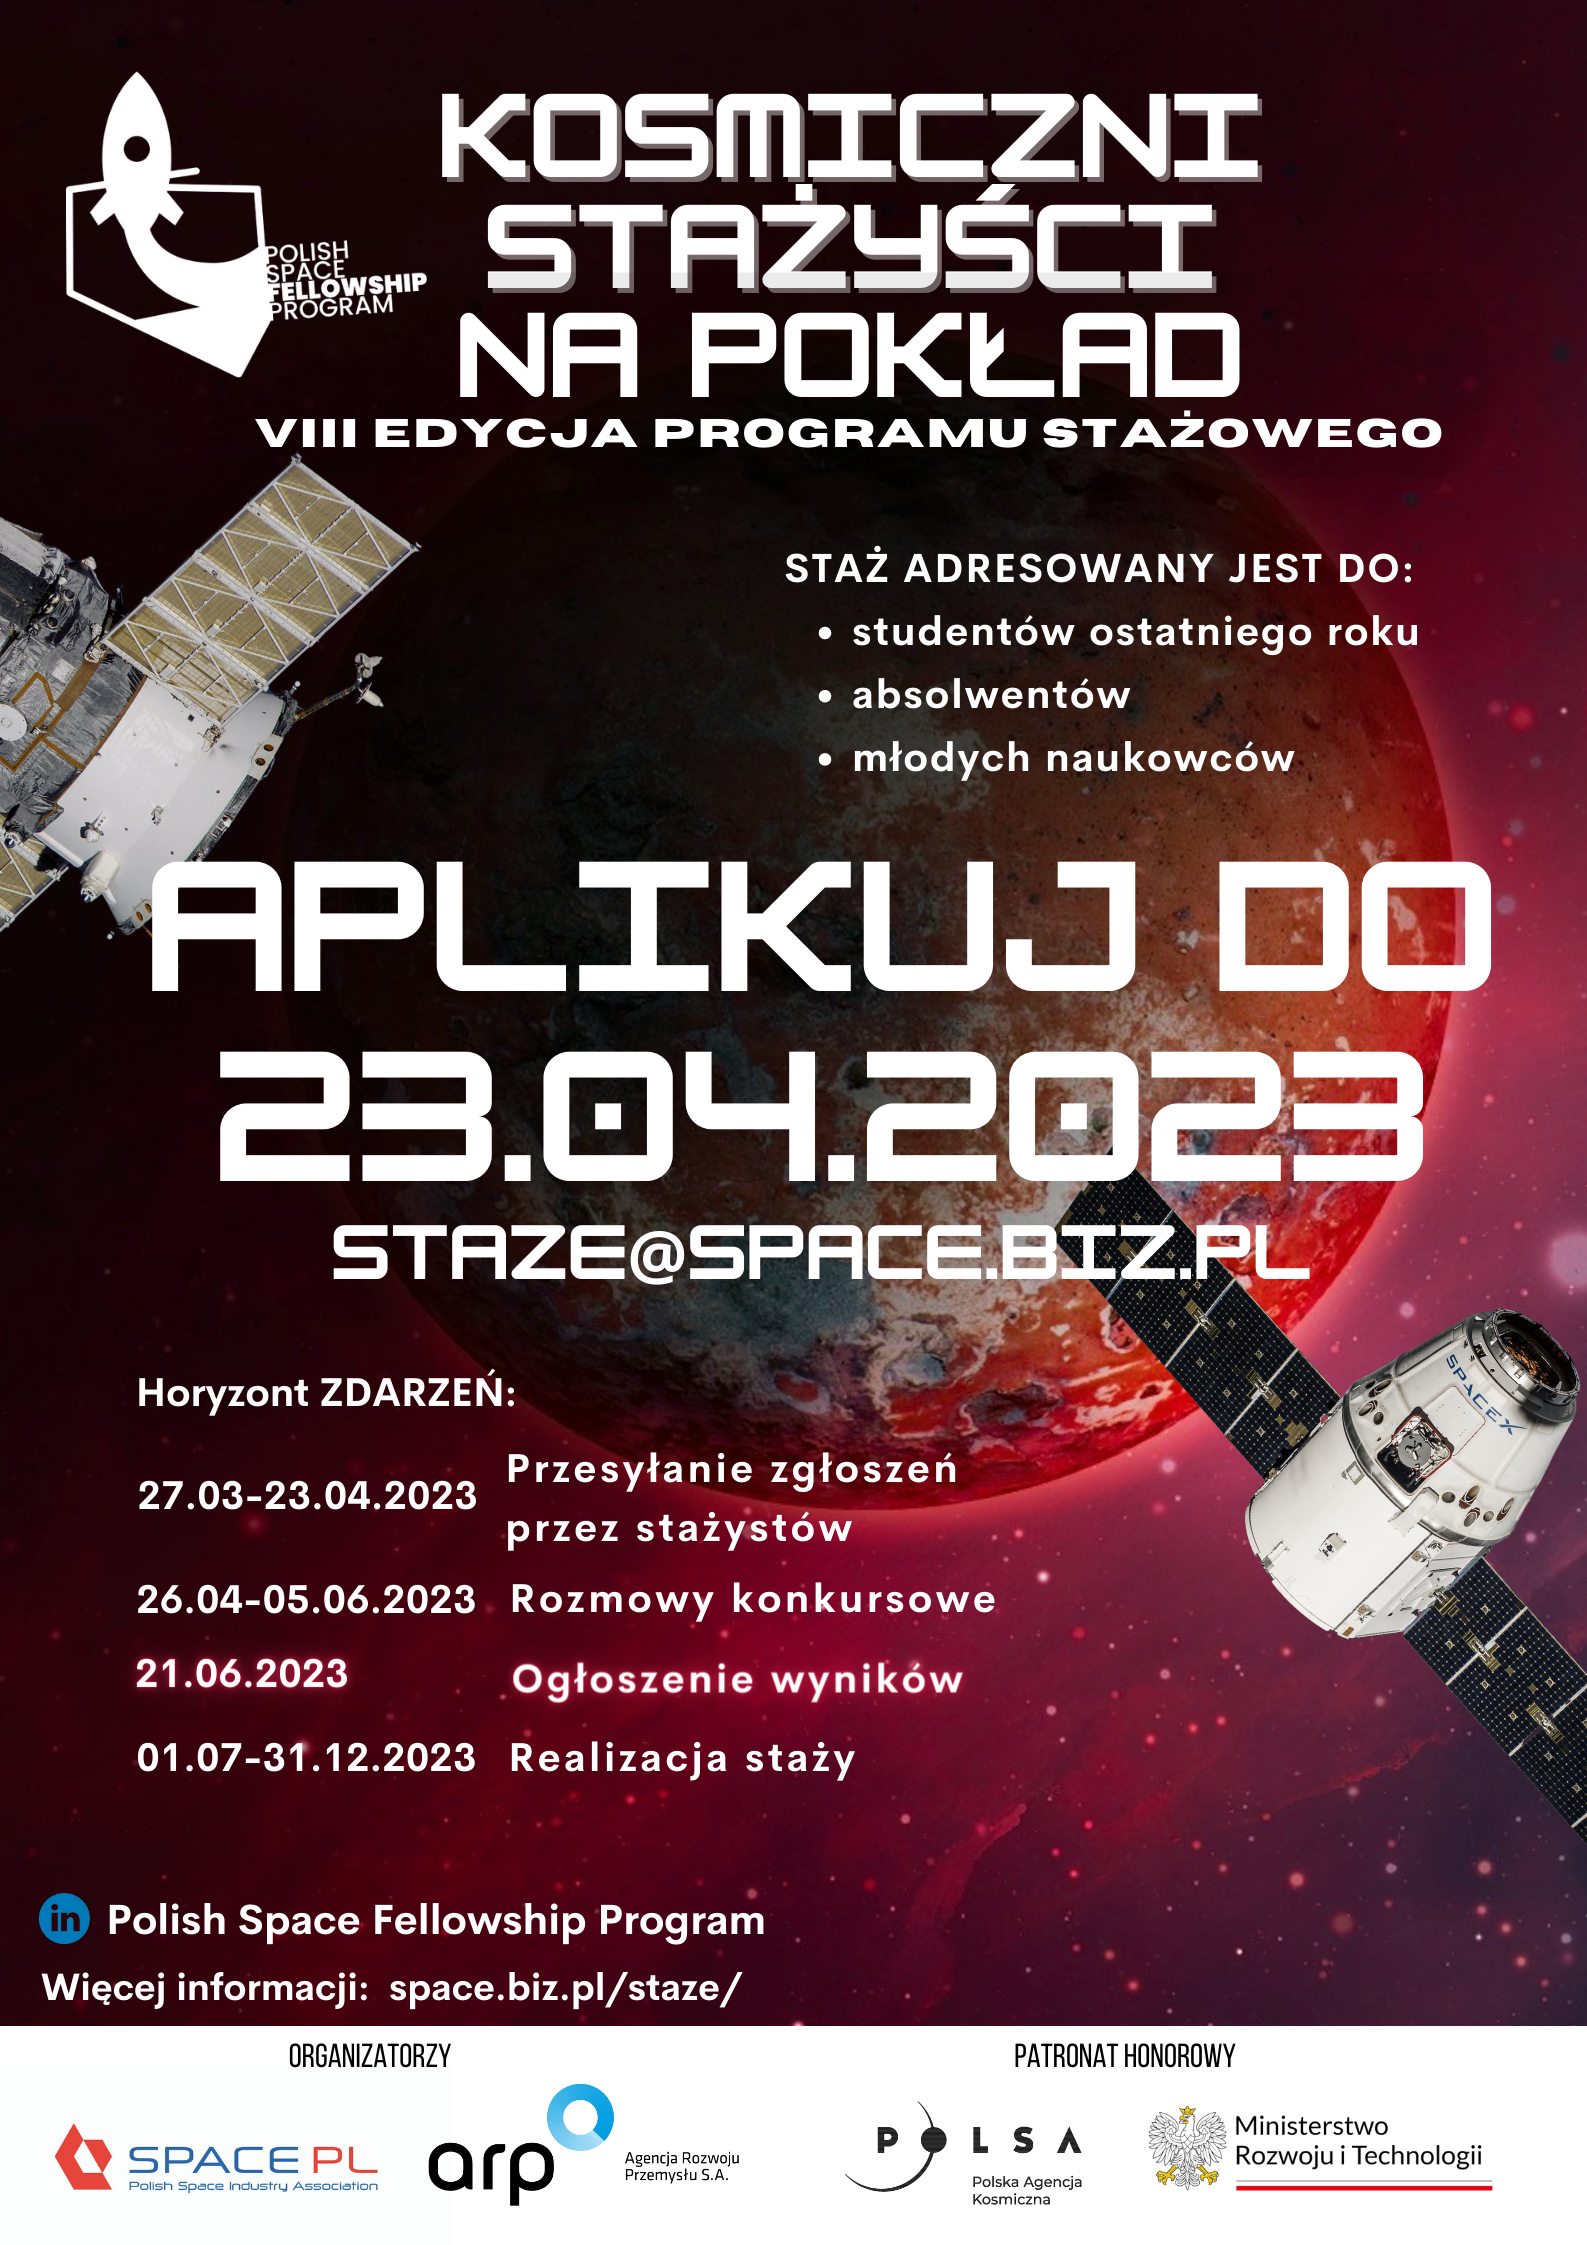 Konkurs stażowy pn. „Polish Space Fellowship Program”